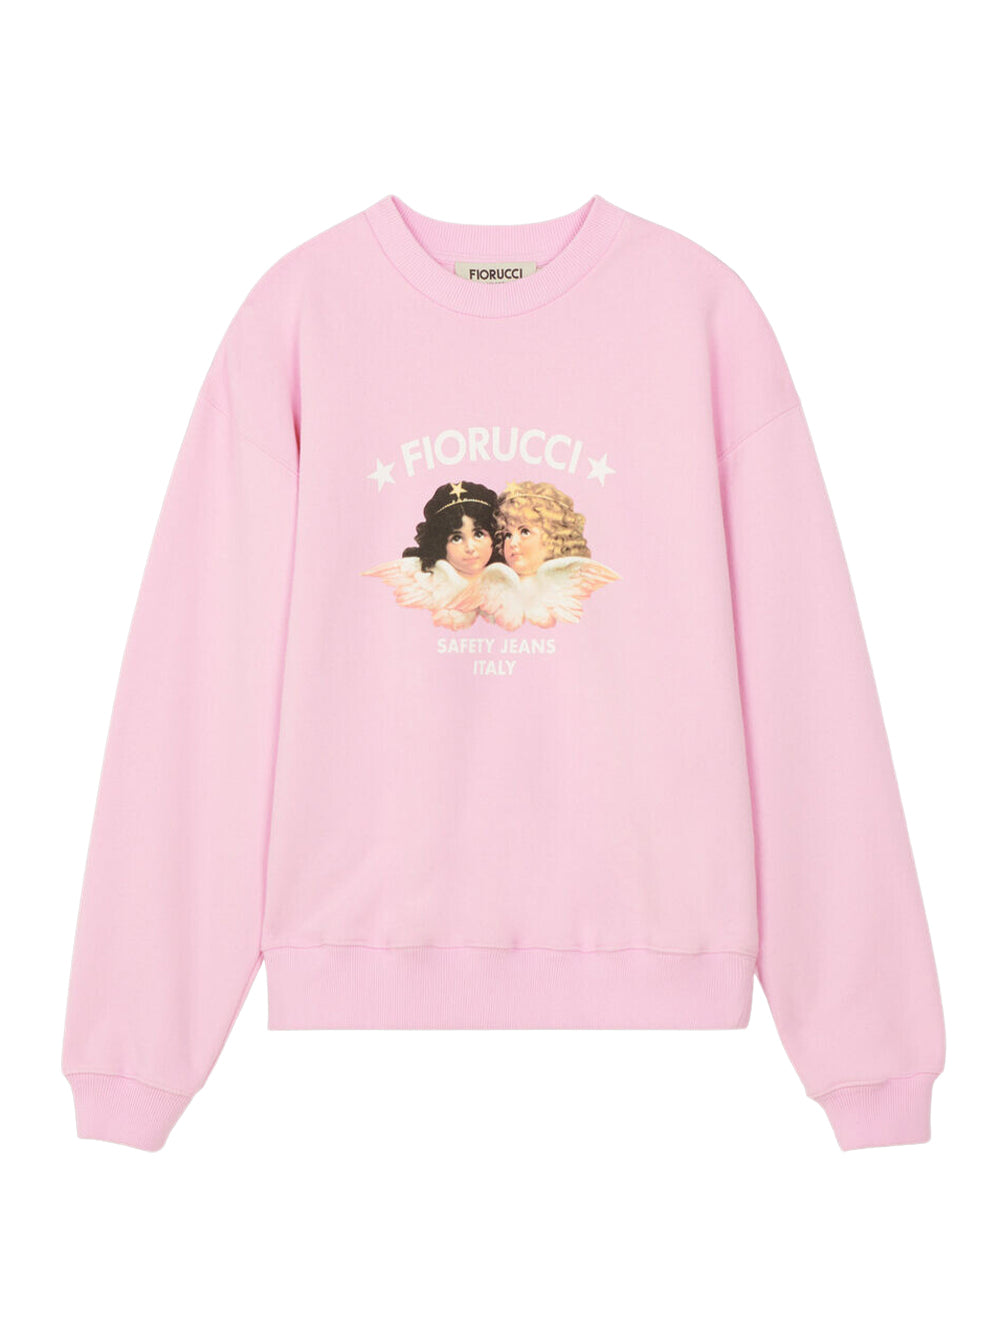 Safety Angels Sweatshirt (Pink)